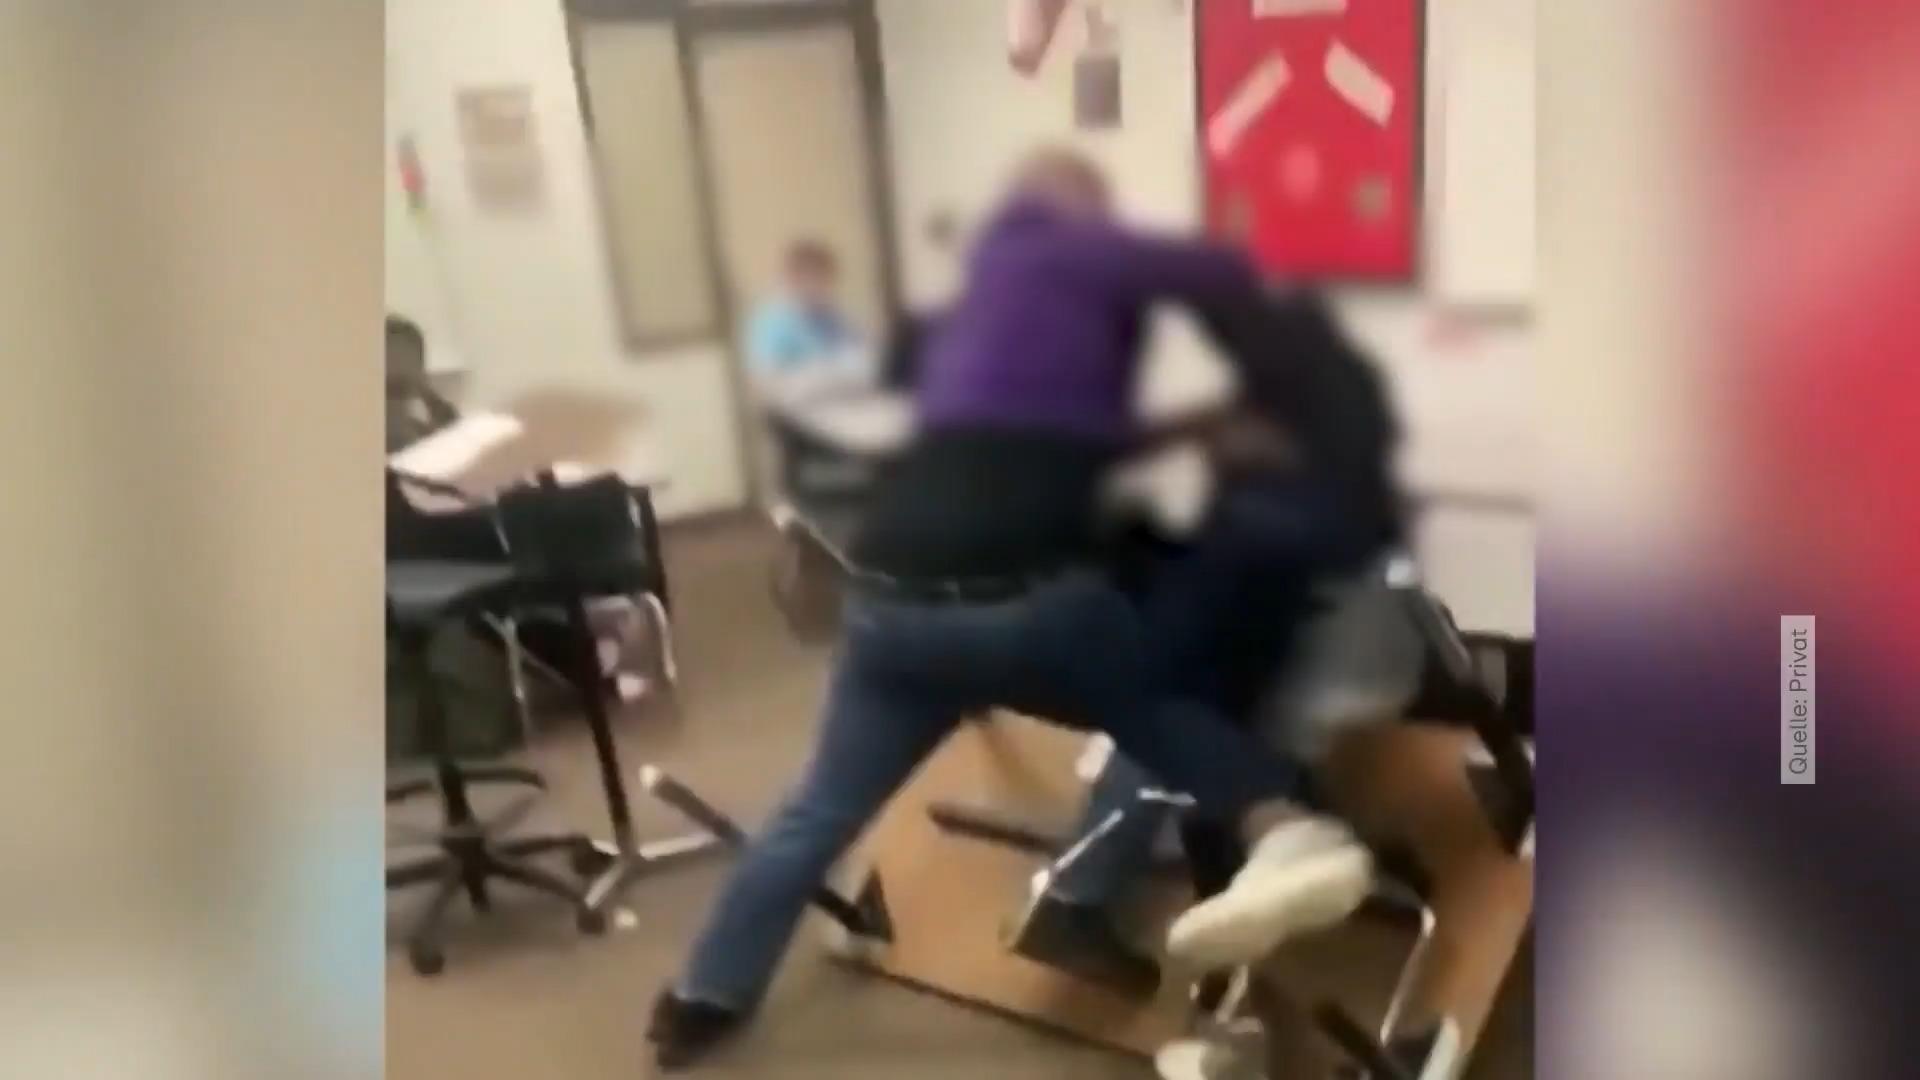 Texas: Lehrer geht auf seinen Schüler los Prügel-Video aus den USA sorgt für Aufschrei